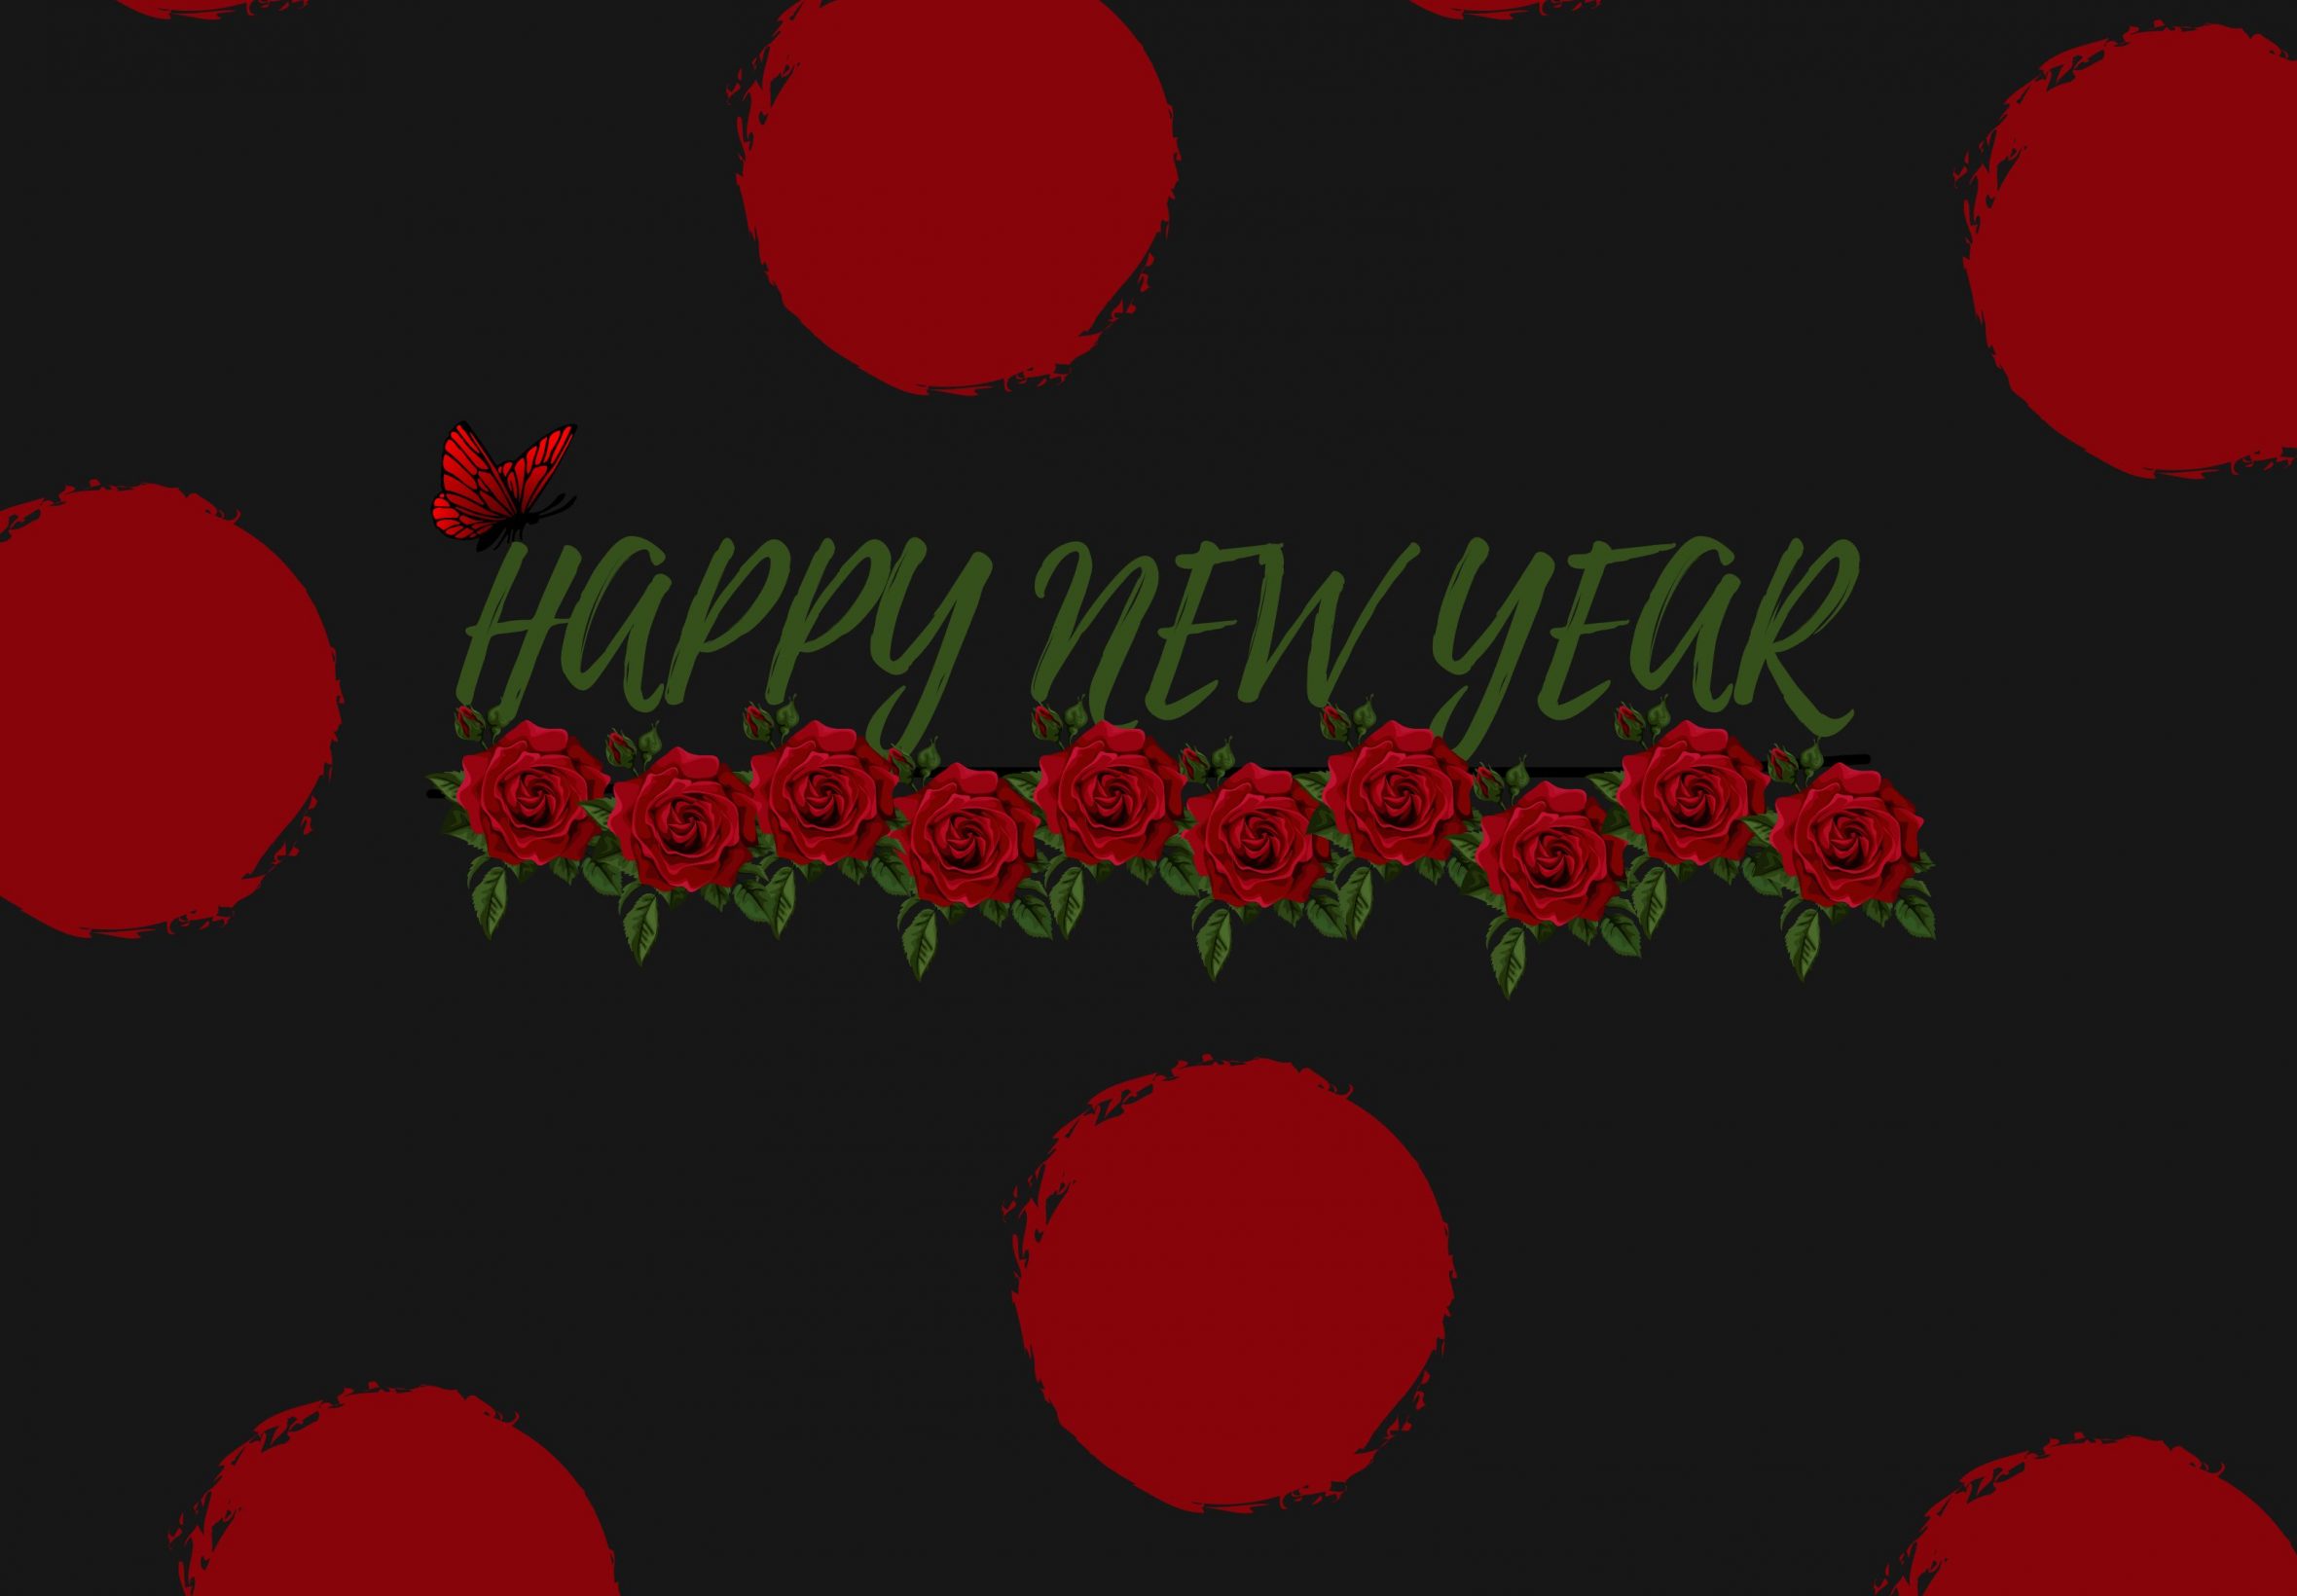 2360x1640 iPad Air wallpaper 4k Red Poka Dot New Year Ipad Wallpaper 2360x1640 pixels resolution